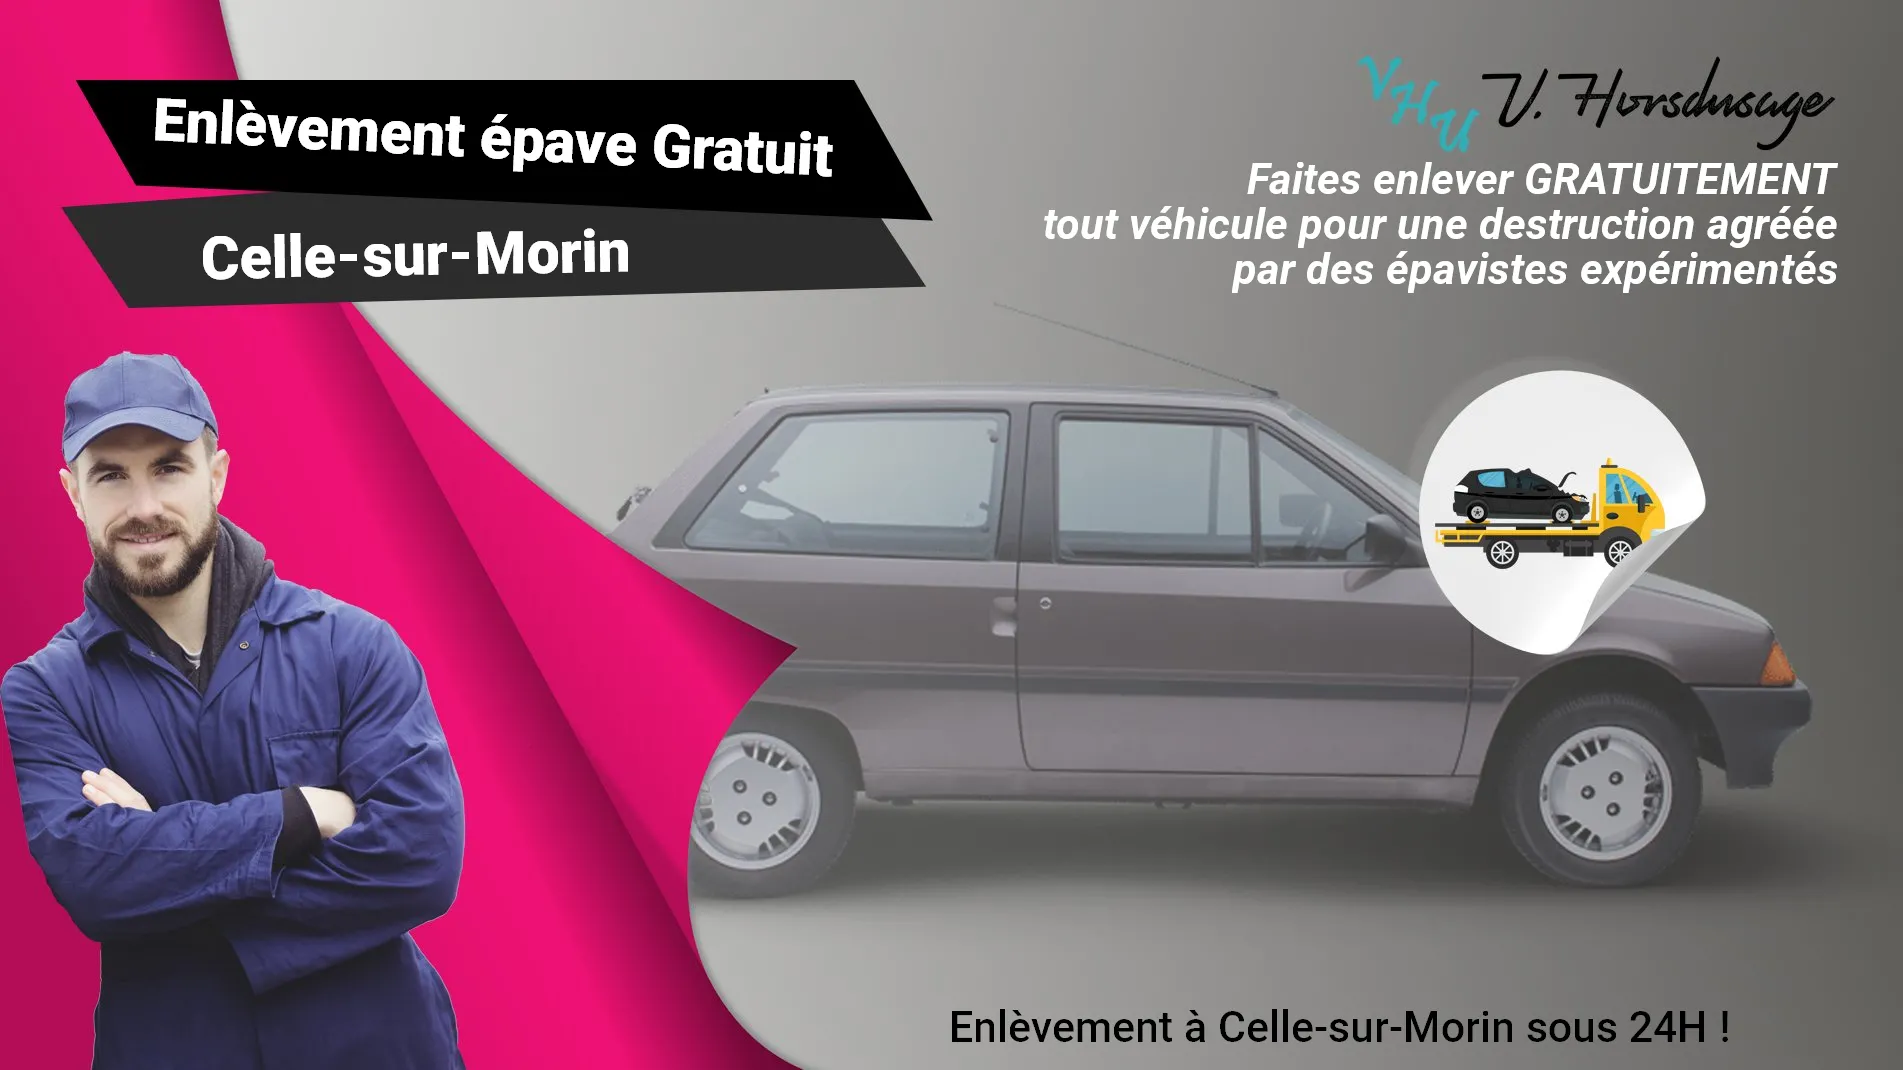 Pour un enlèvement gratuit à Celle-sur-Morin, contactez nos épavistes agréé VHU